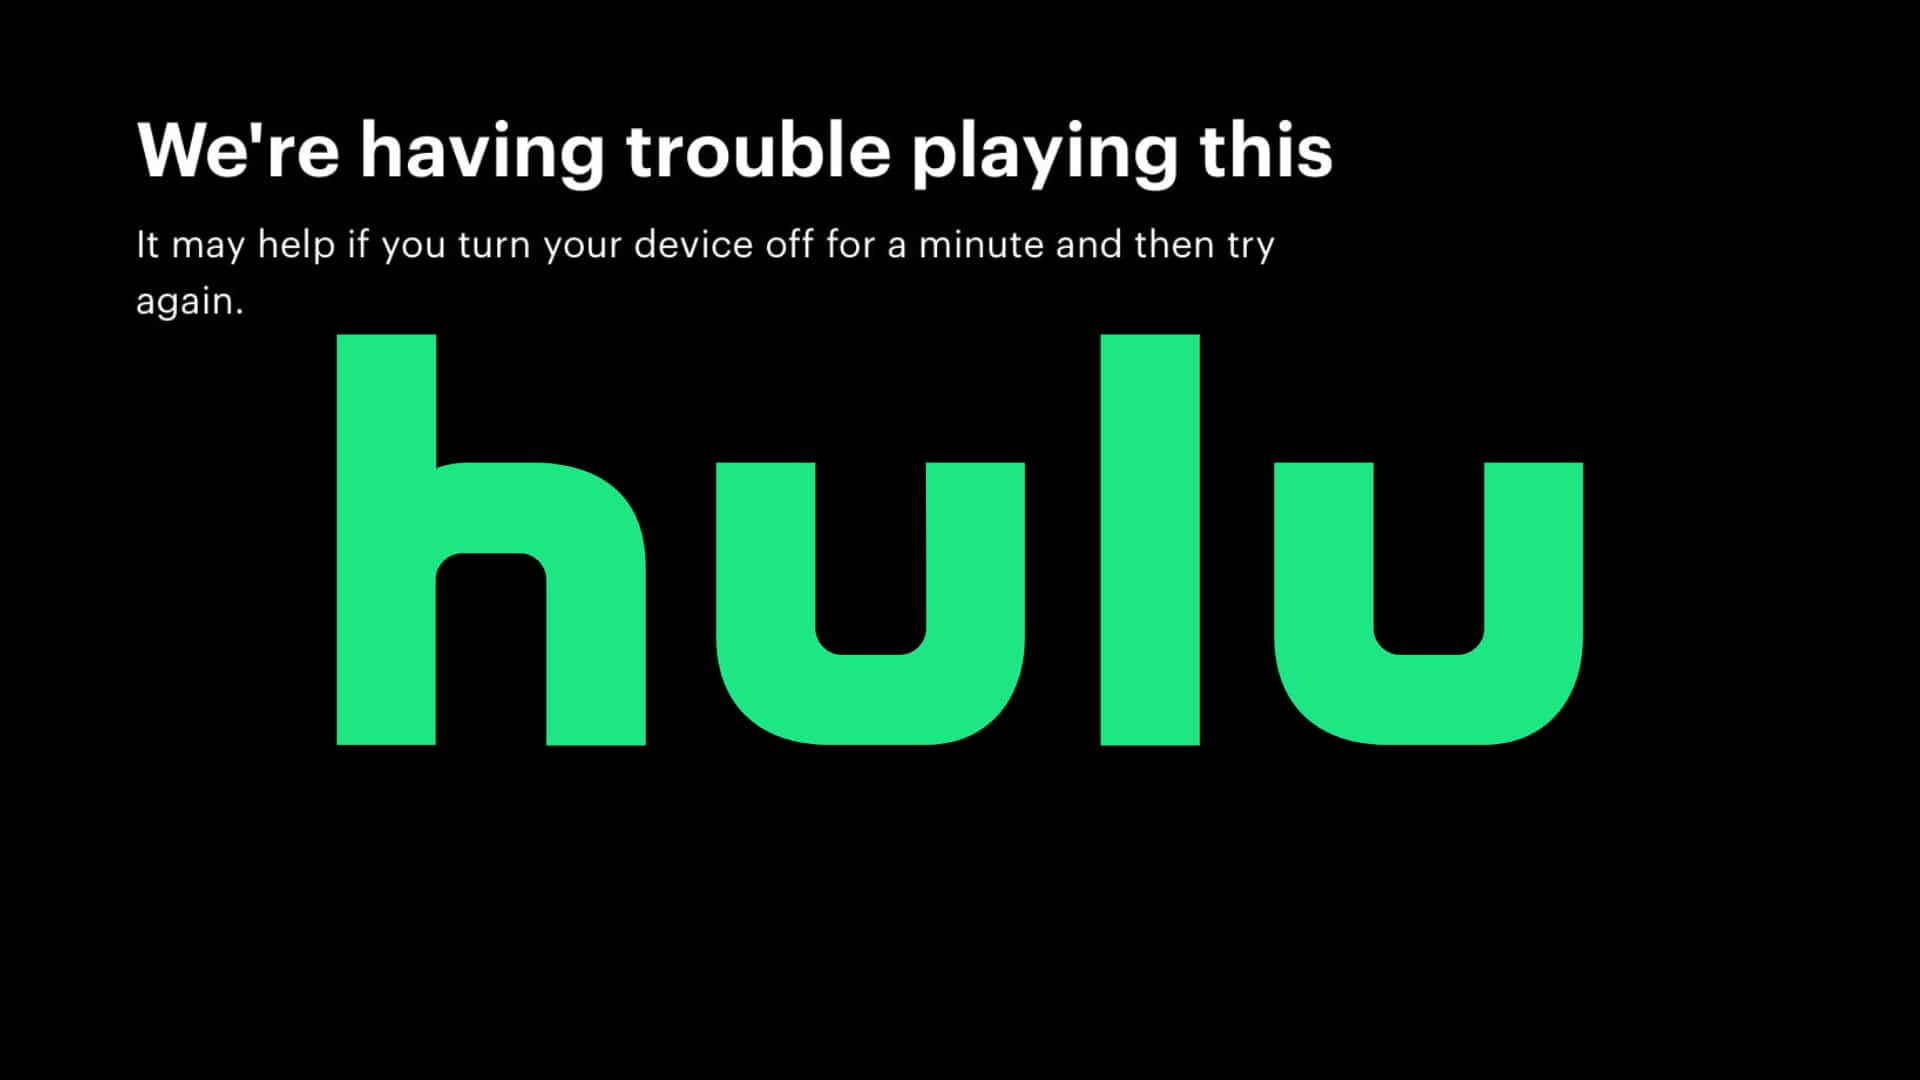 Hulu Down